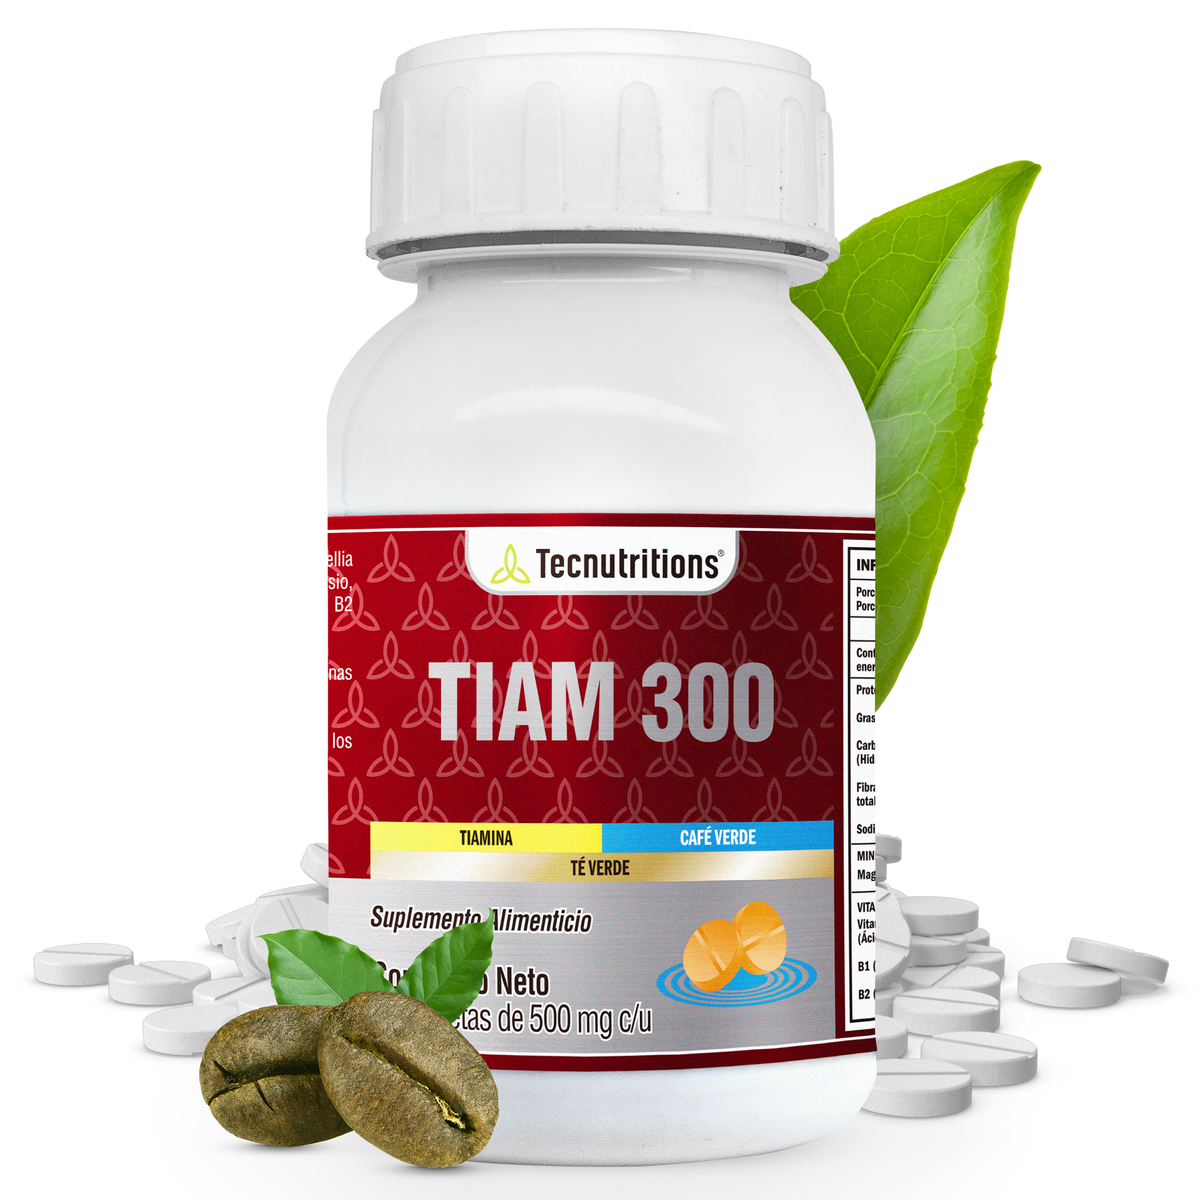 Suplemento alimenticio Tiam 300, 60 tabs, con Tiamina, café verde, desvelos, fatiga